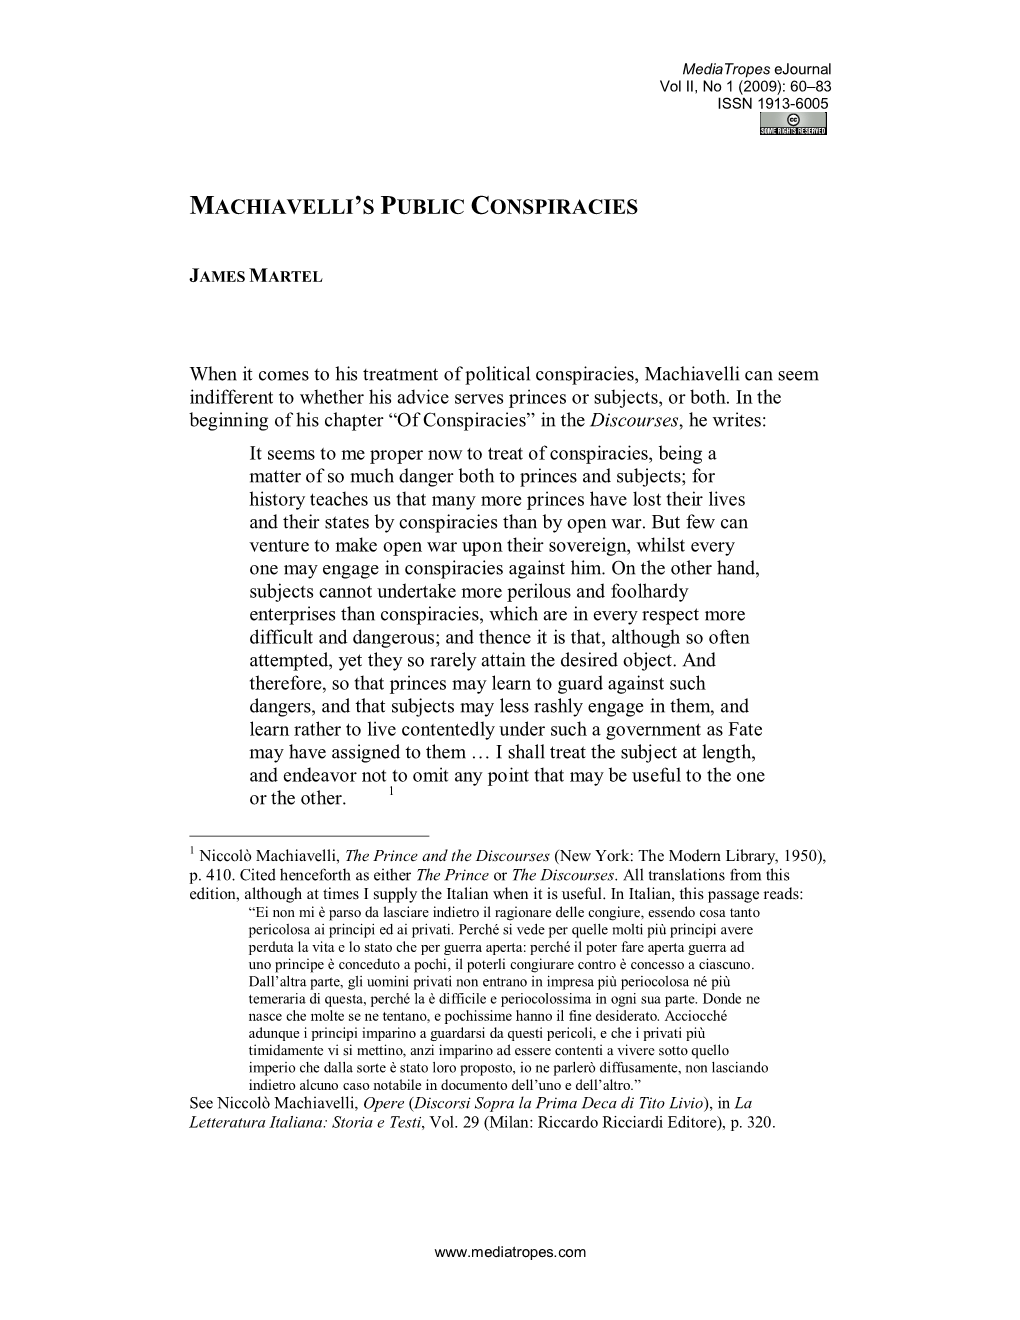 Machiavelli's Public Conspiracies